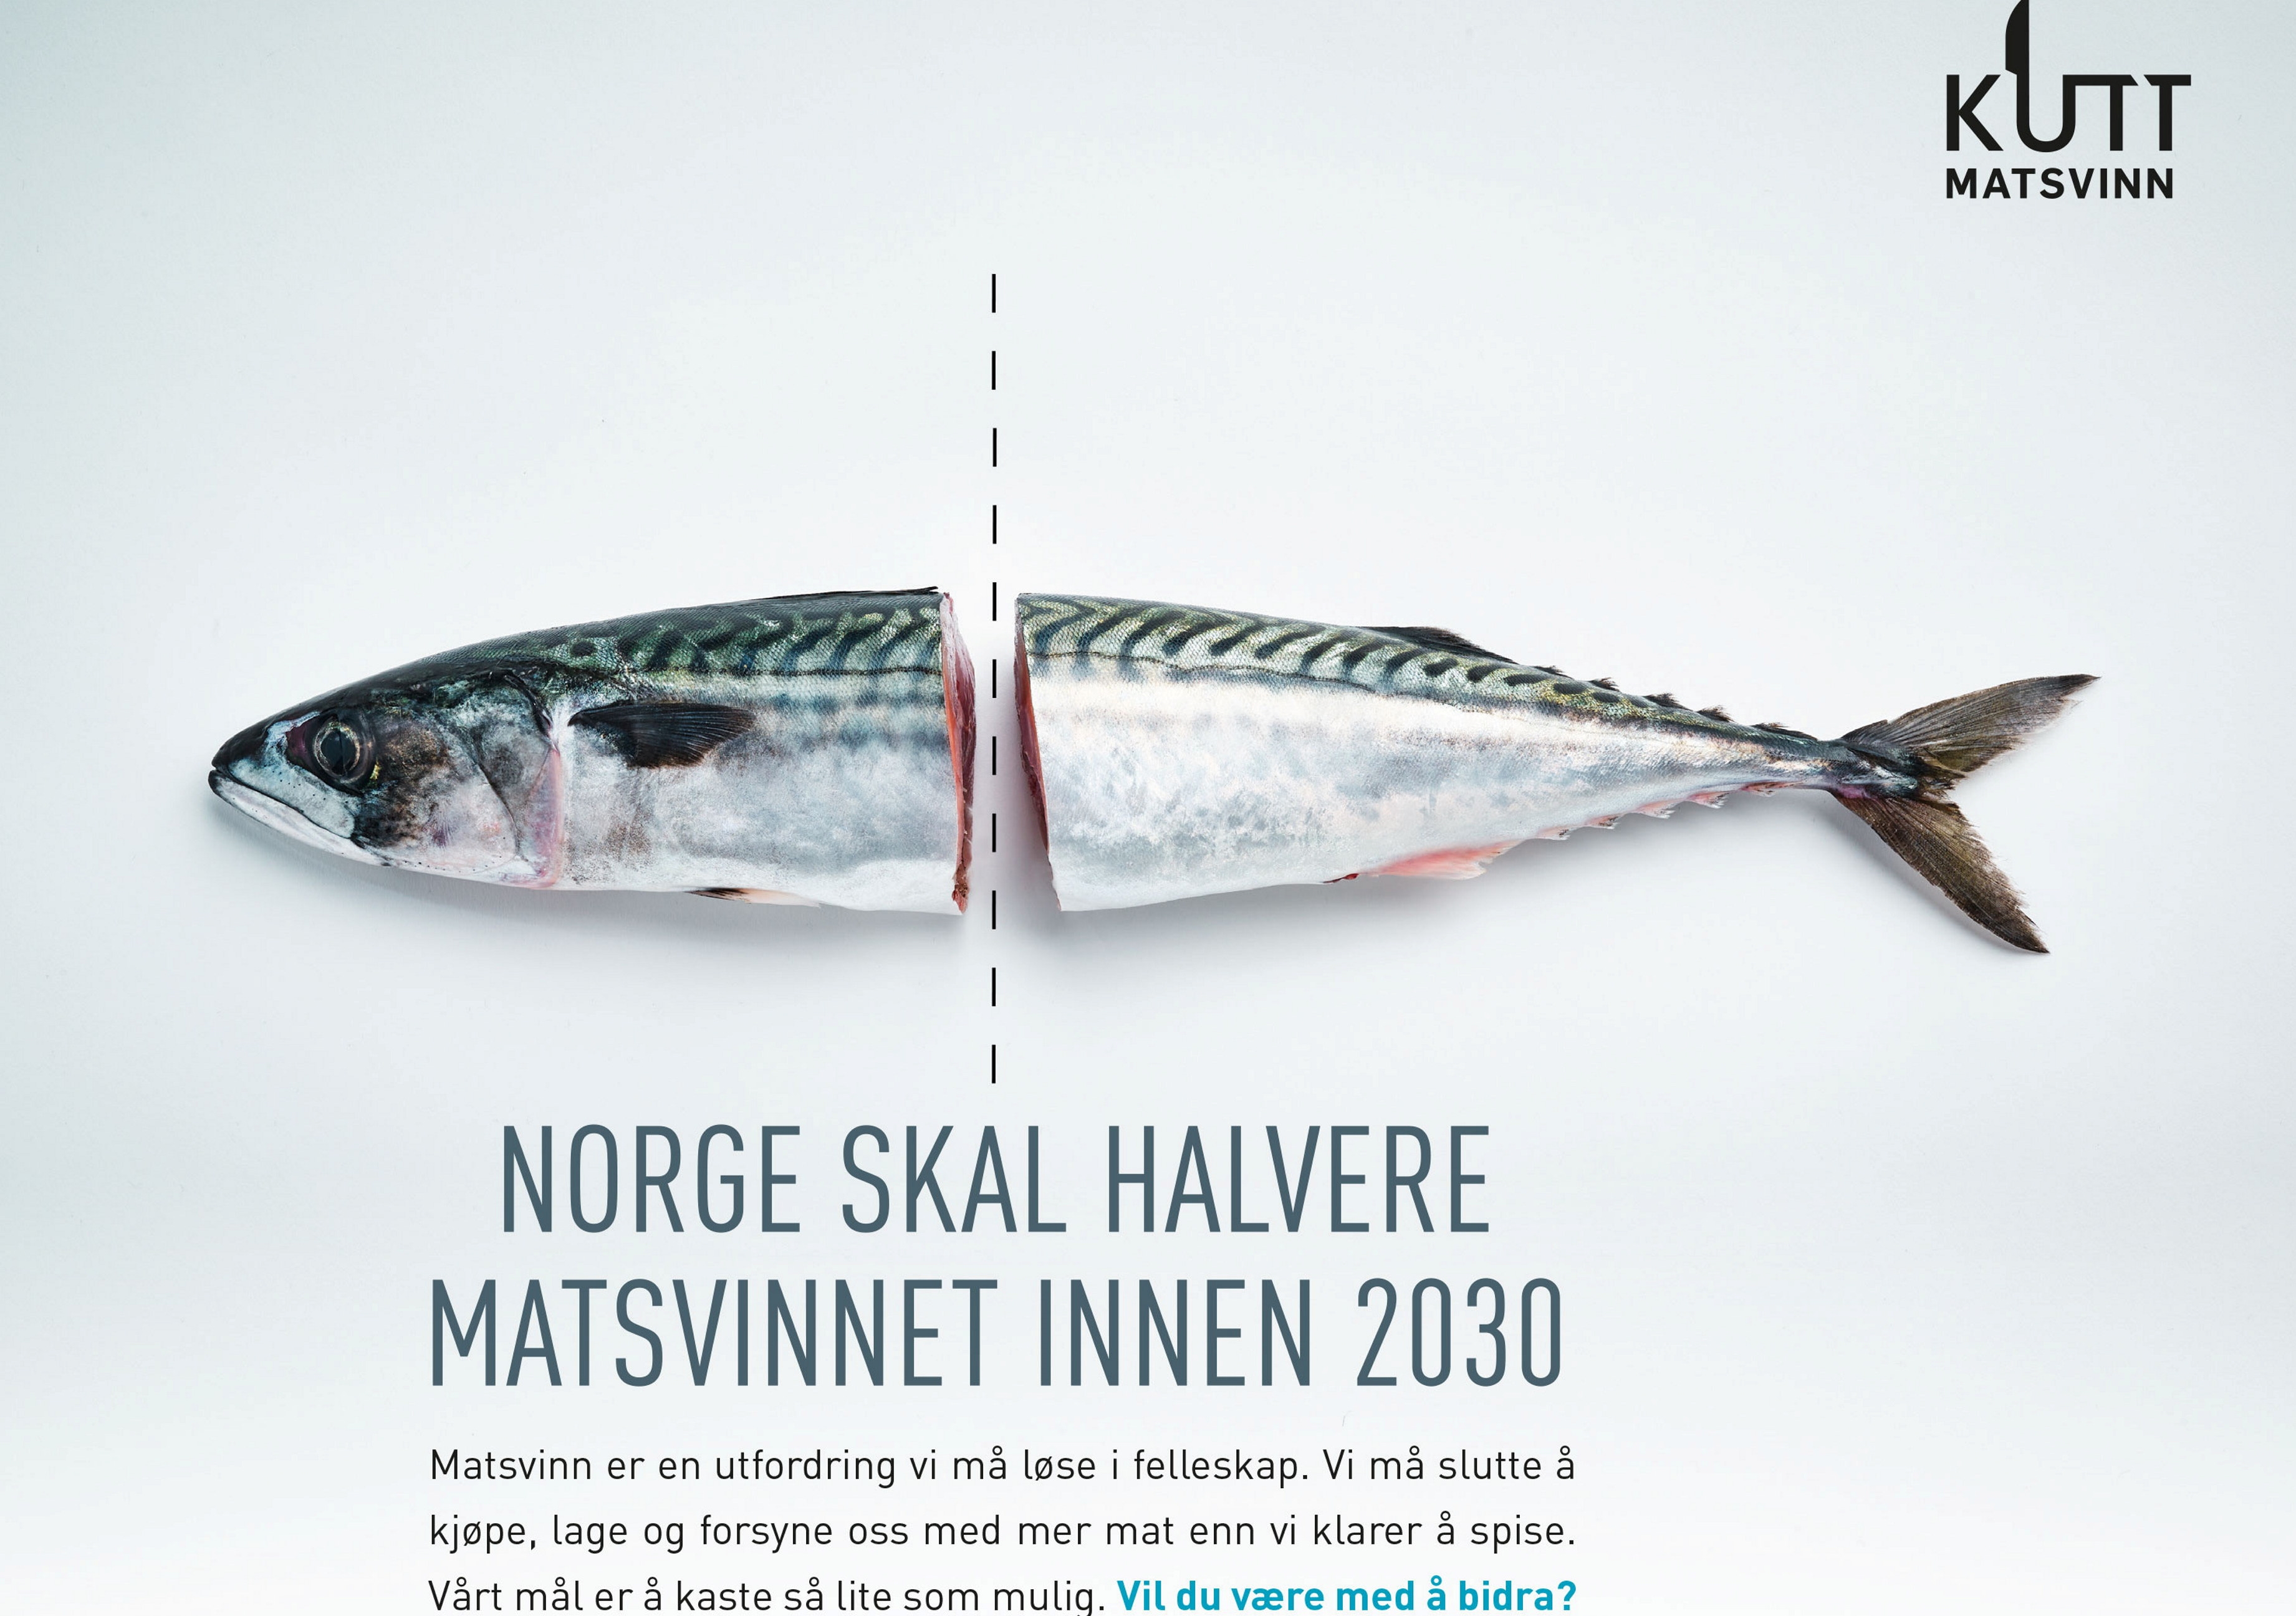 En plakat med bildet av en fisk som er delt i midten, og med tekst under fisken "NORGE SKAL HALVERE MATSVINNET INNEN 2030". Illustrasjonsbilde.